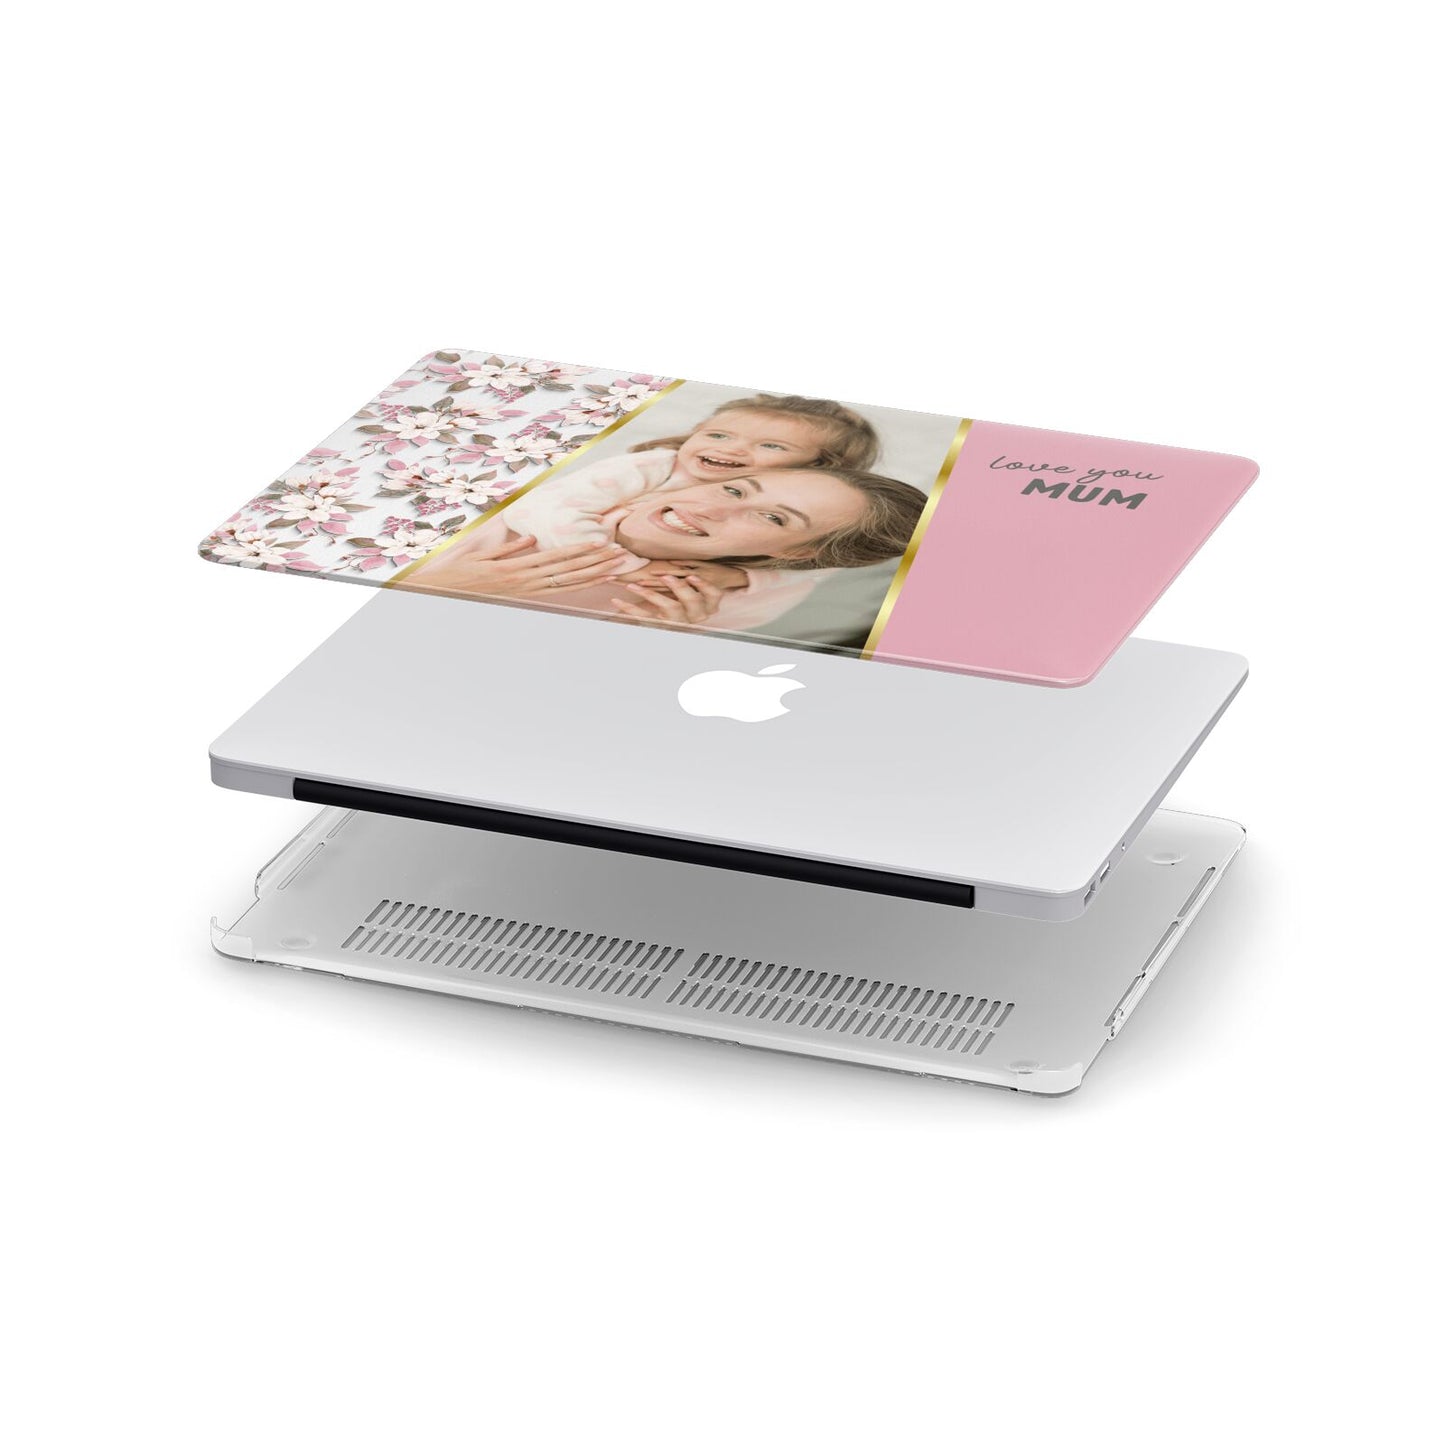 Personalised Love You Mum Apple MacBook Case in Detail